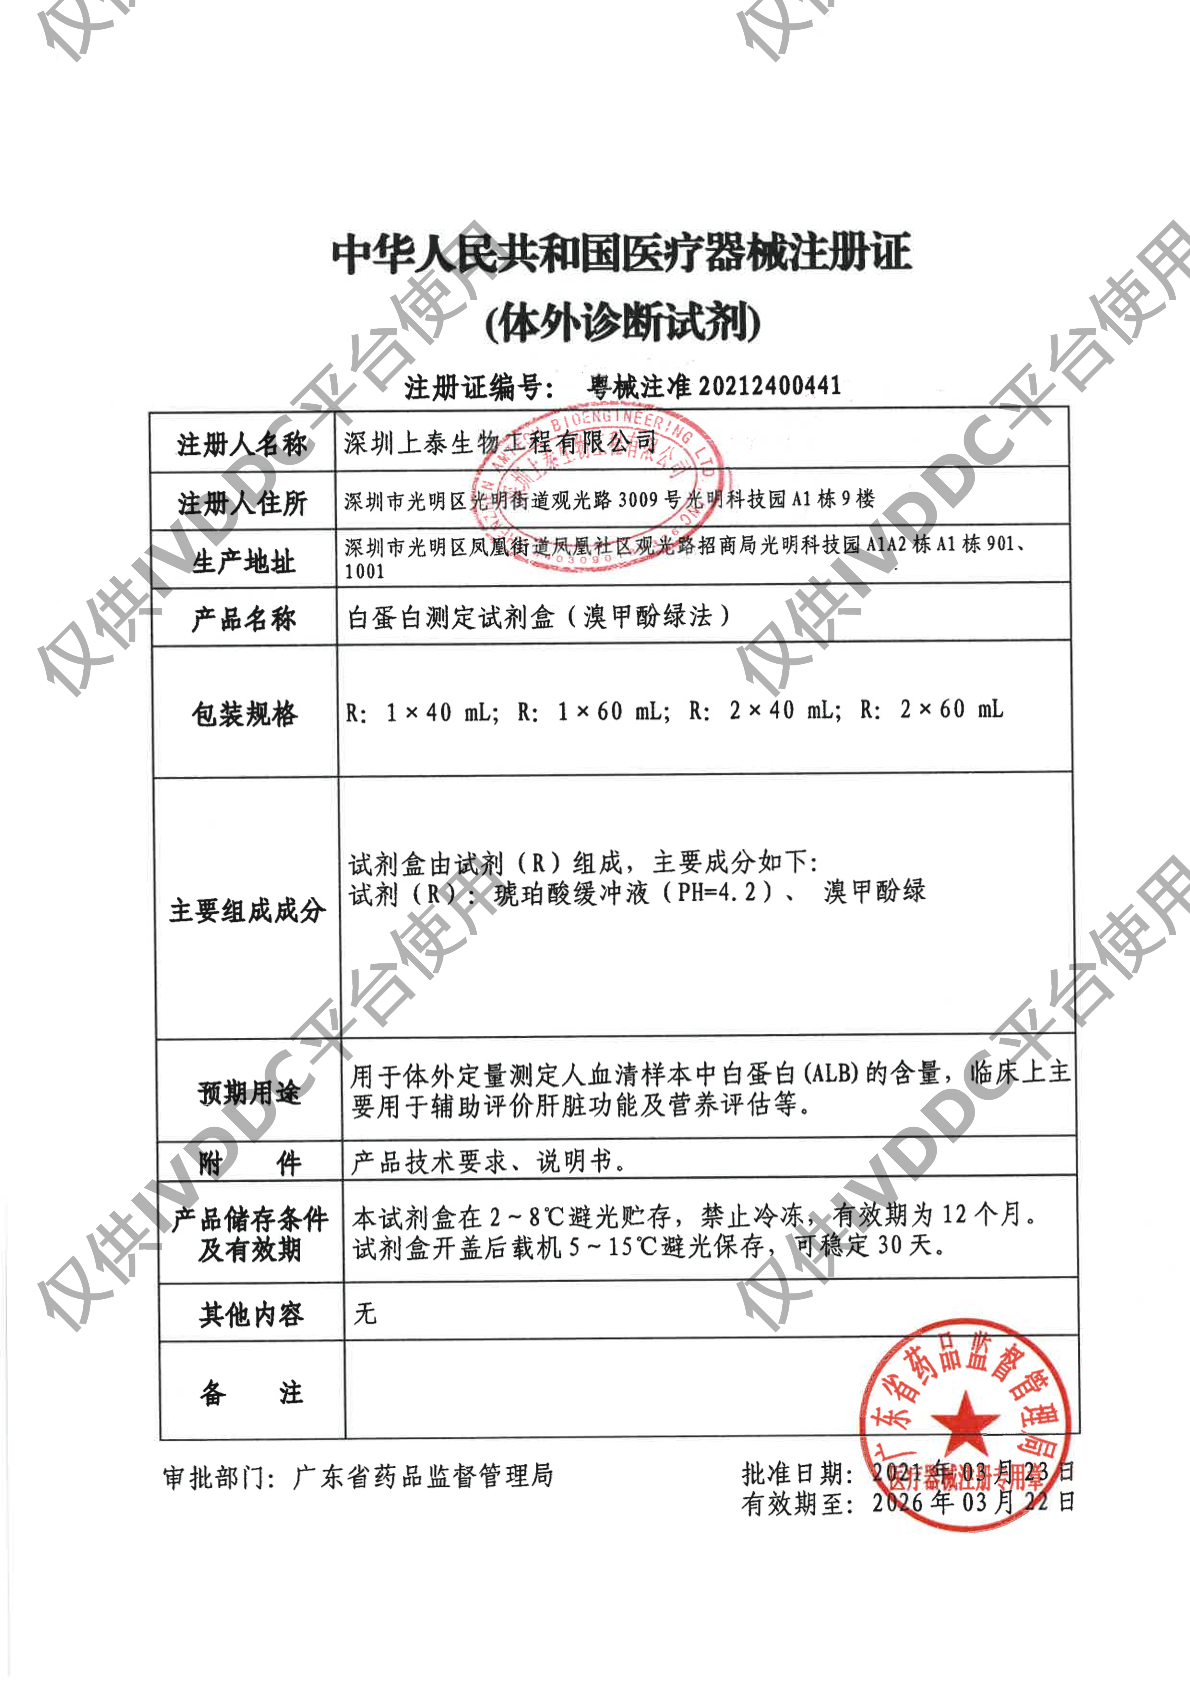 【深圳上泰】白蛋白测定试剂盒(溴甲酚绿法)注册证